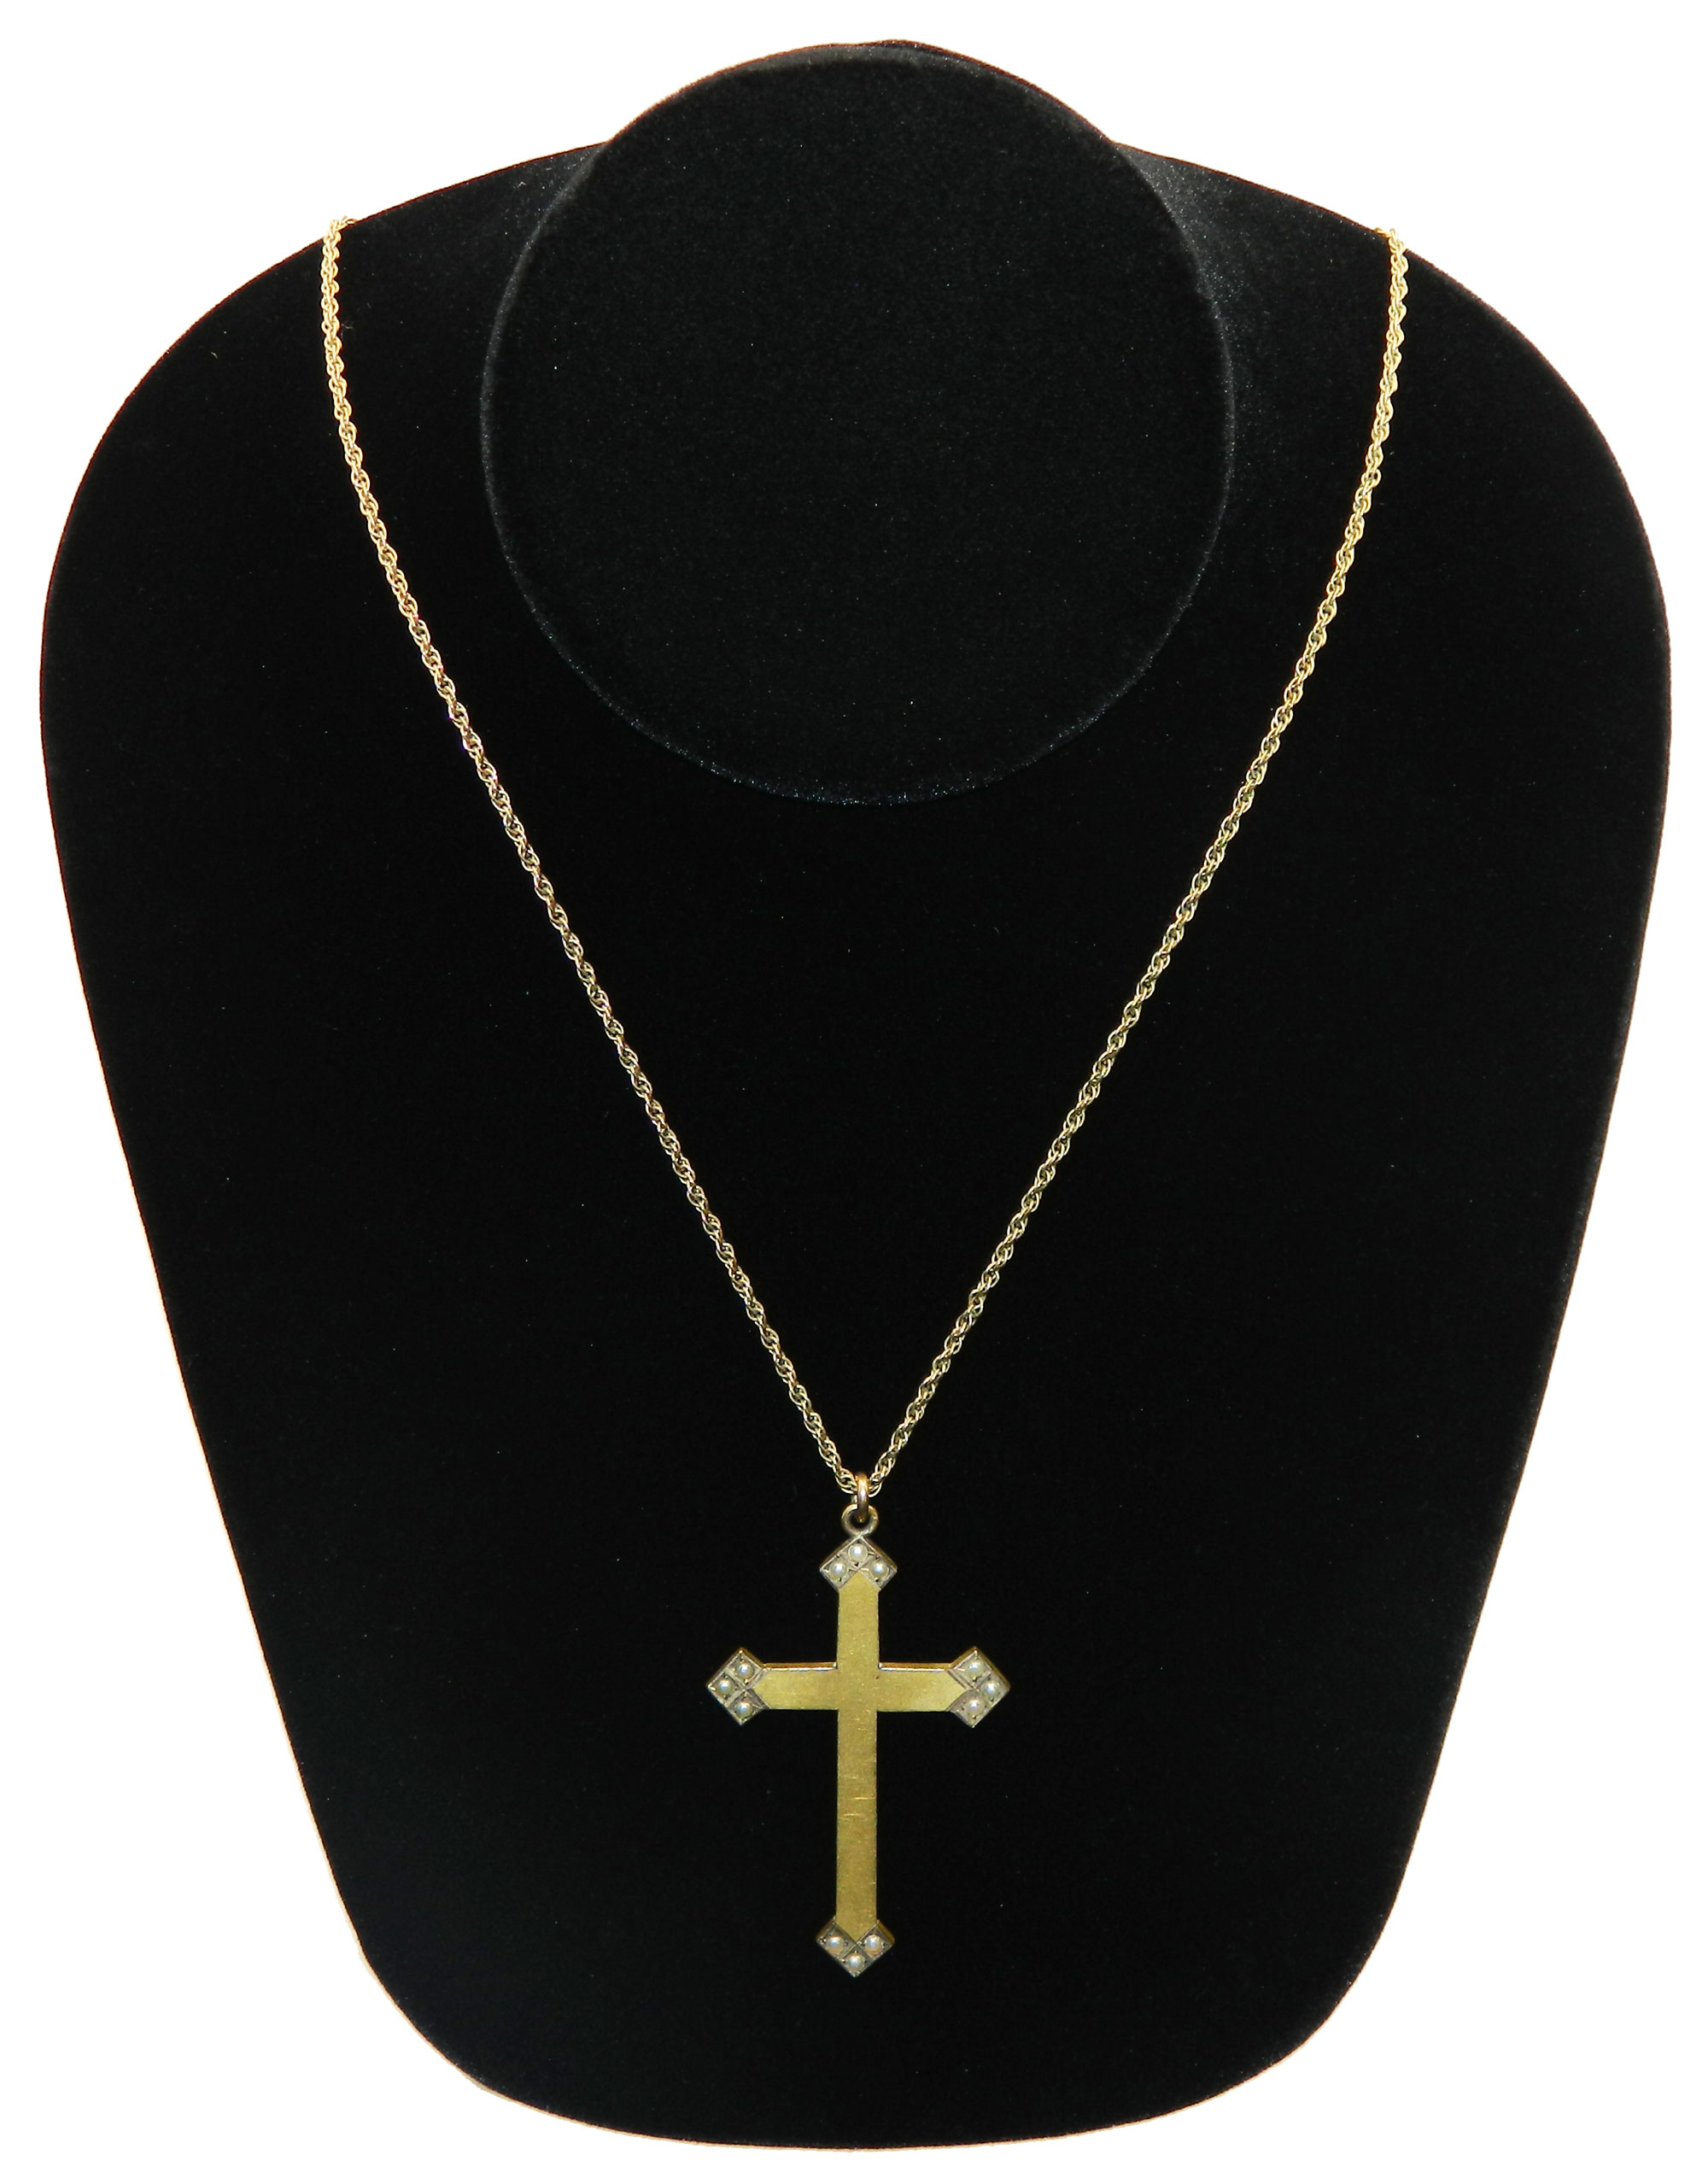 Vintage cross pendant necklace